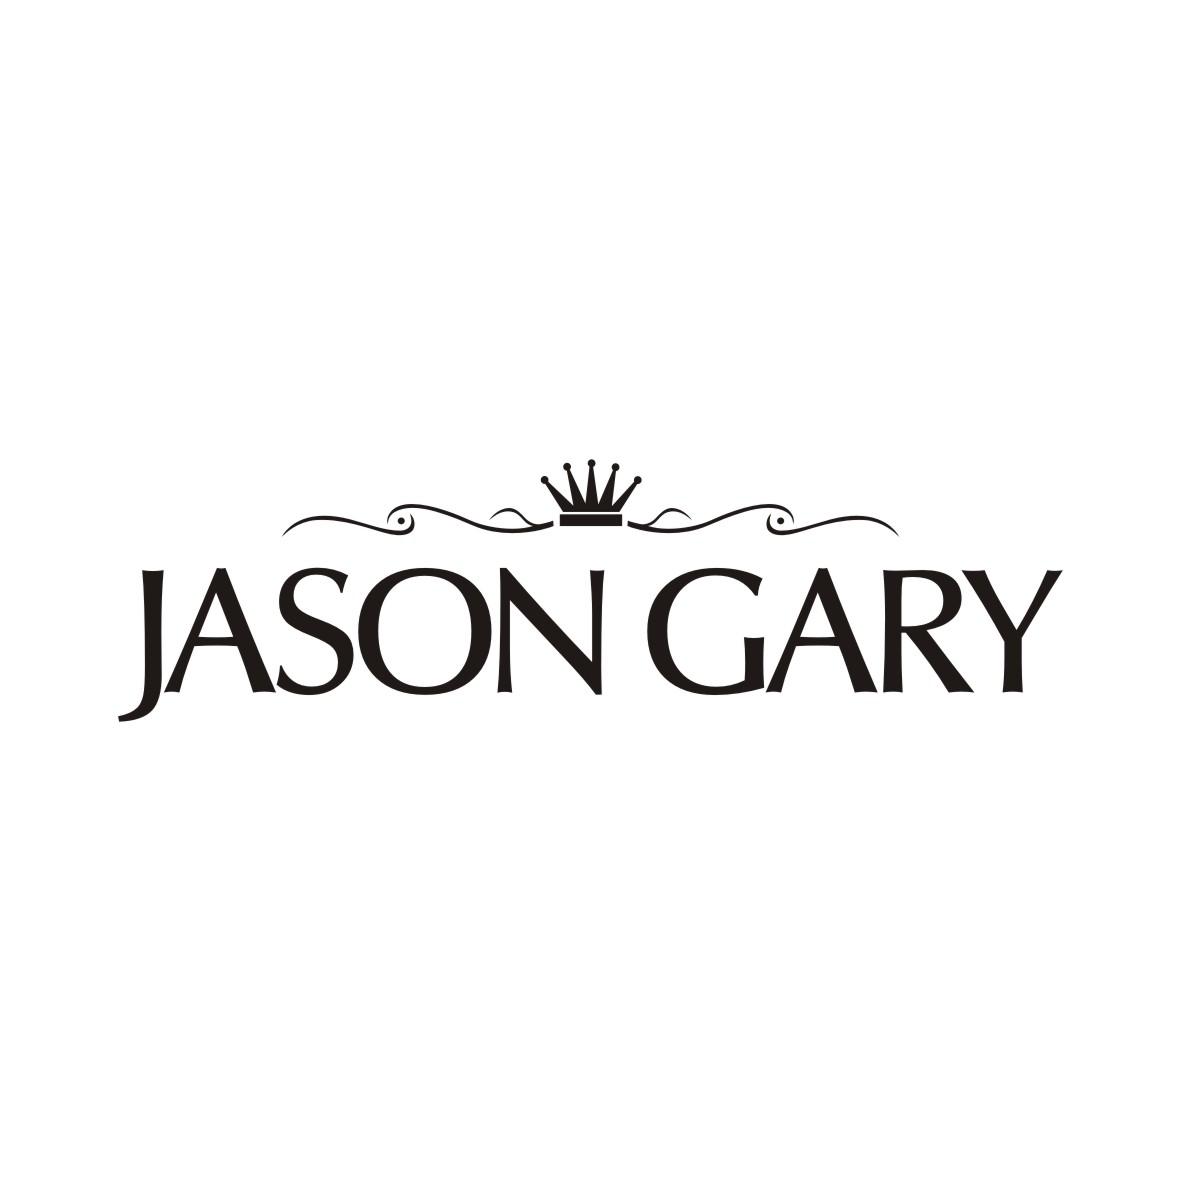 JASON GARY